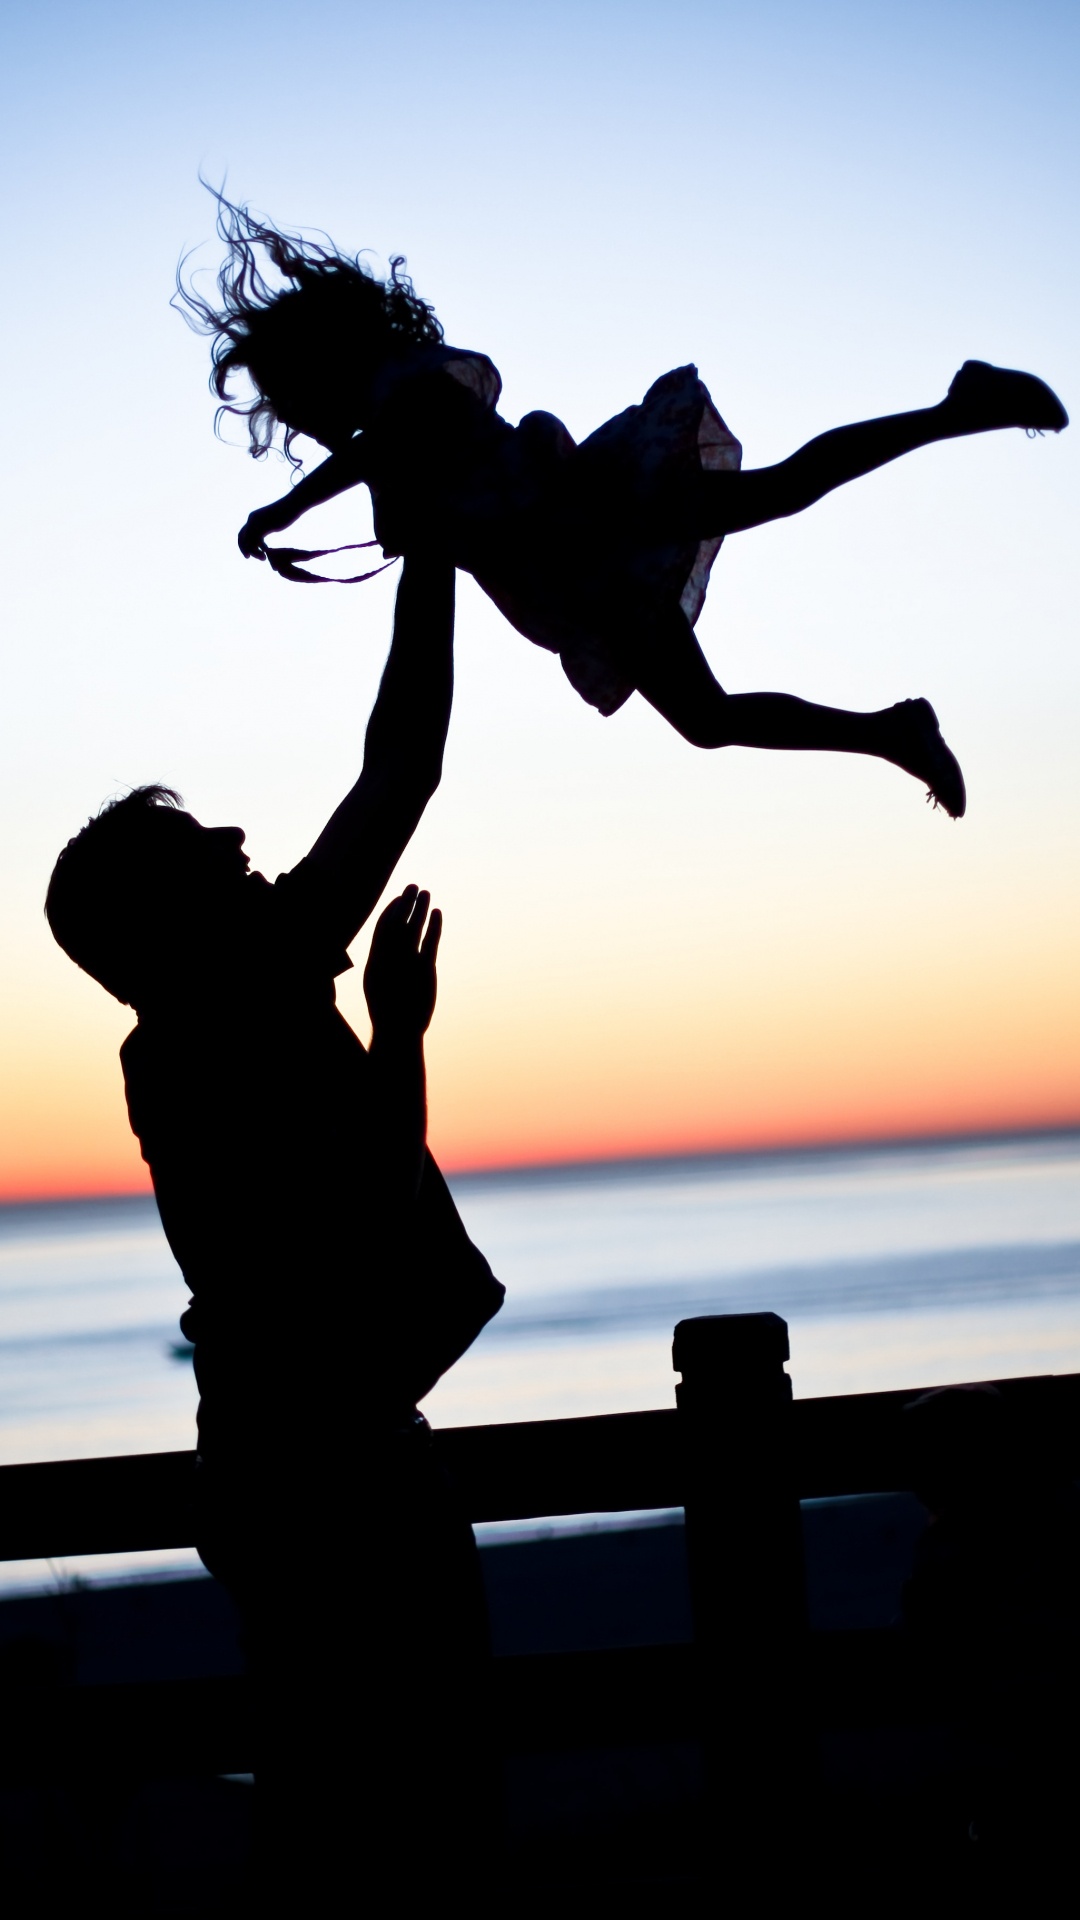 爸爸, 女儿, 家庭, 人们在自然界, 跳跃 壁纸 1080x1920 允许